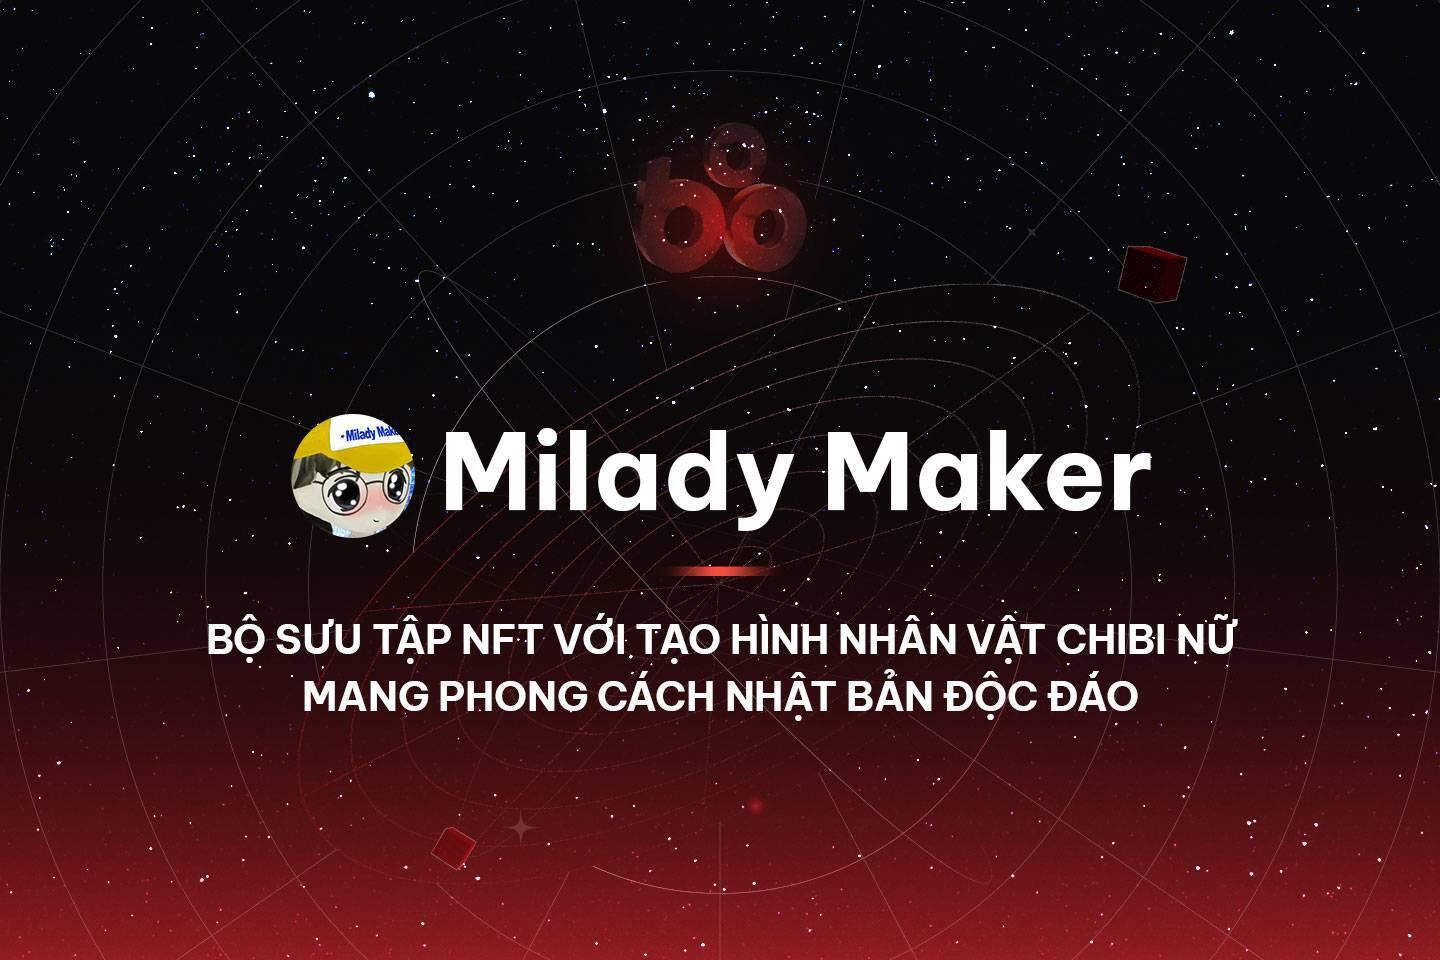 milady-maker-bo-suu-tap-nft-voi-tao-hinh-nhan-vat-chibi-nu-mang-phong-cach-nhat-ban-doc-dao